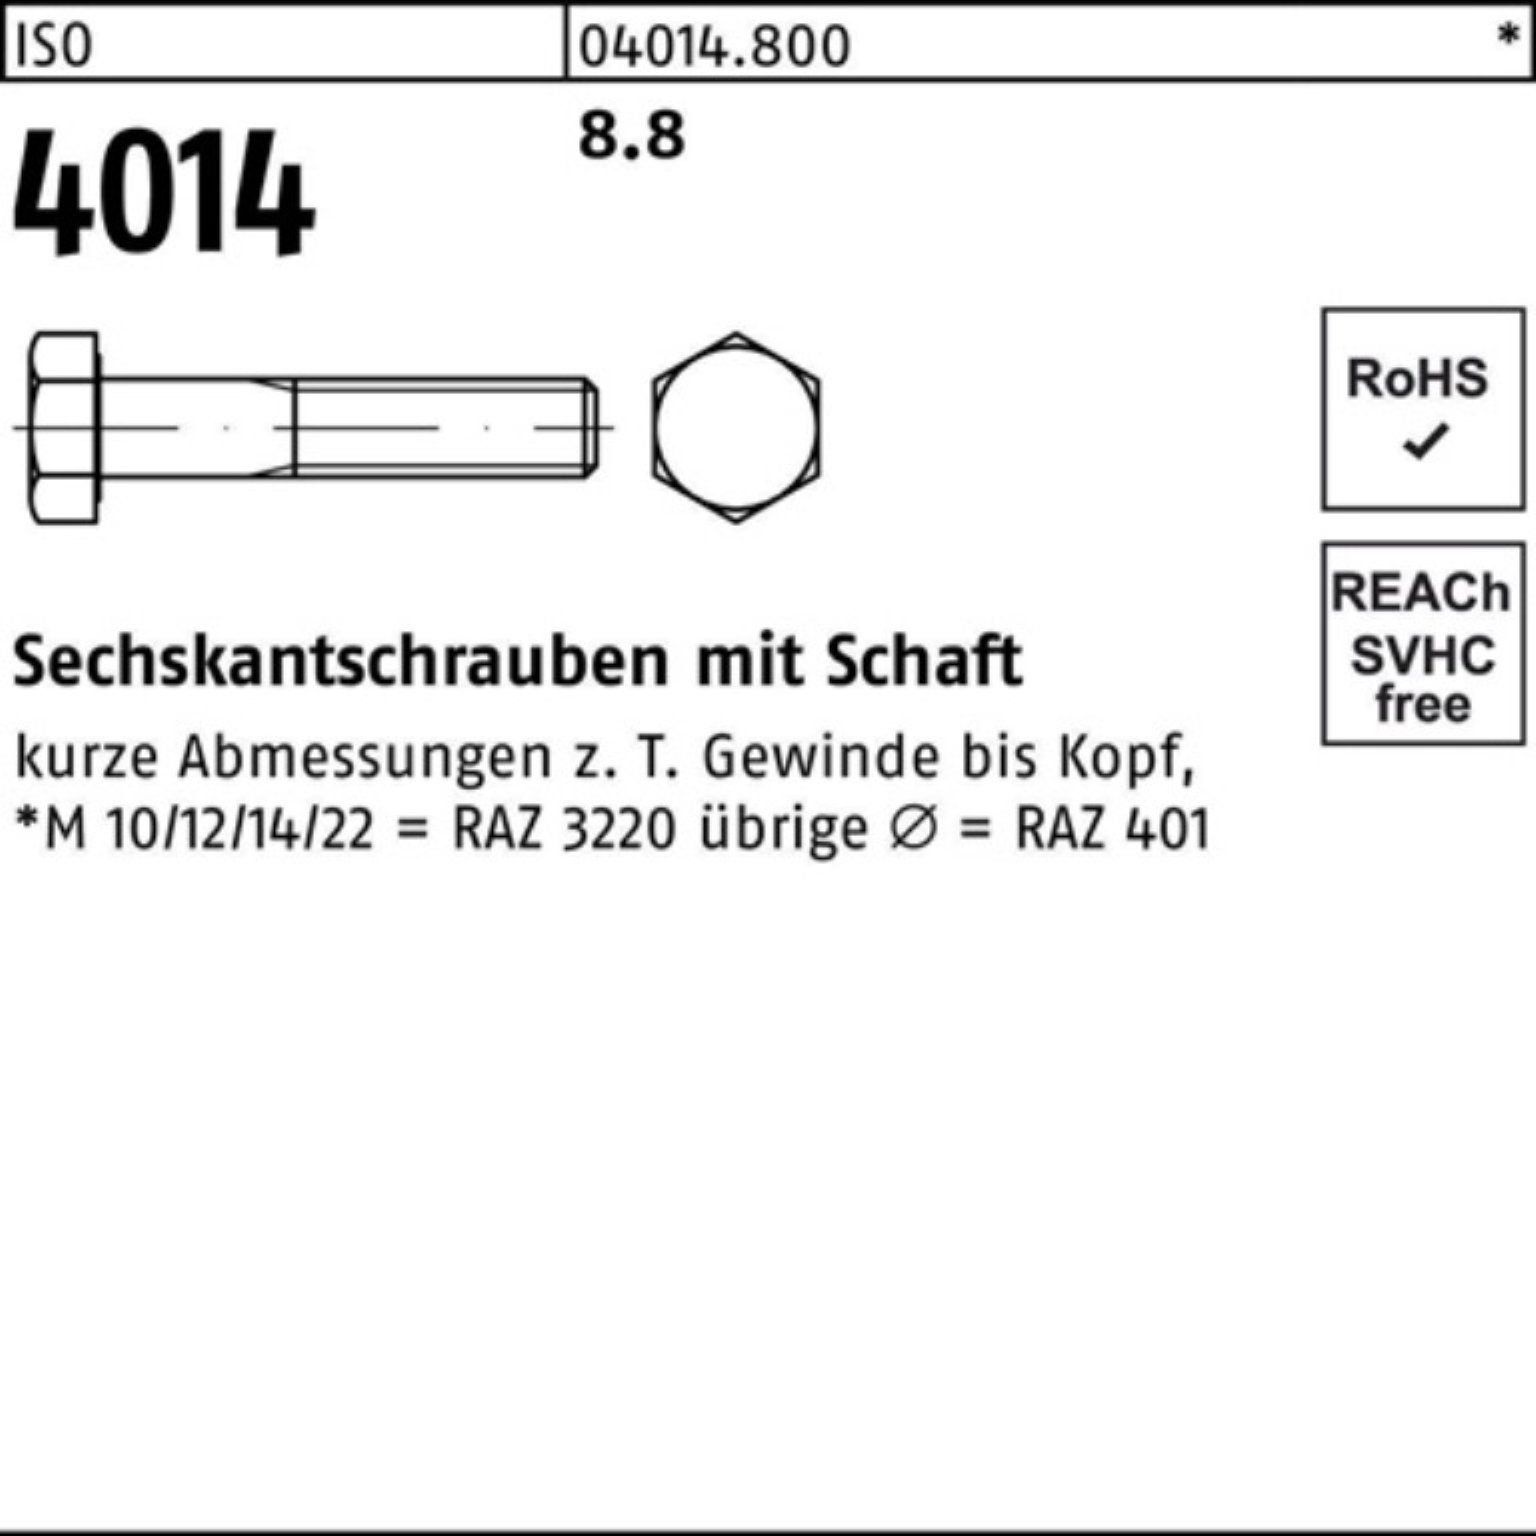 ISO Sechskantschraube 420 4014 Bufab Schaft Stück ISO 1 M42x 8.8 Pack Sechskantschraube 100er